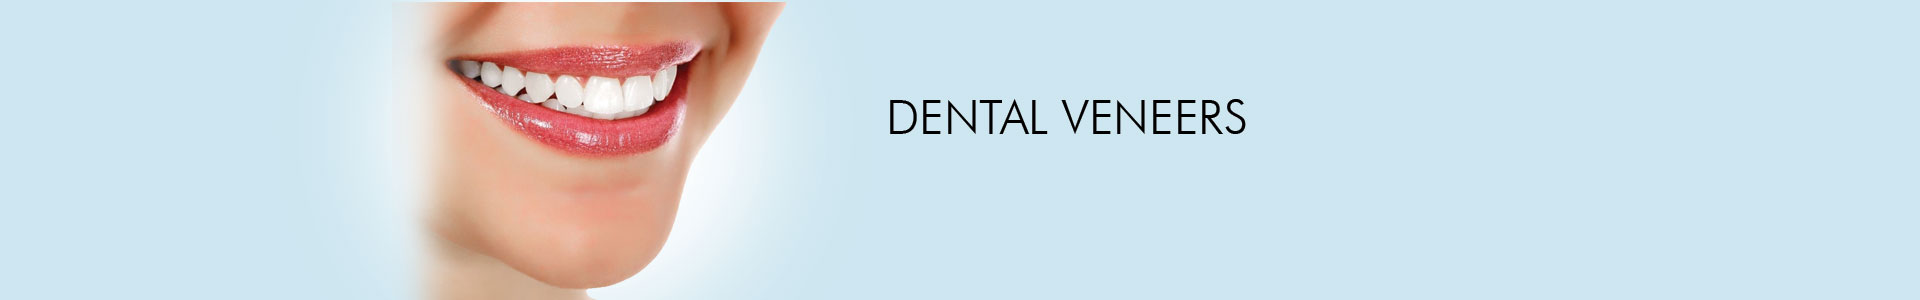 Dental Veeners